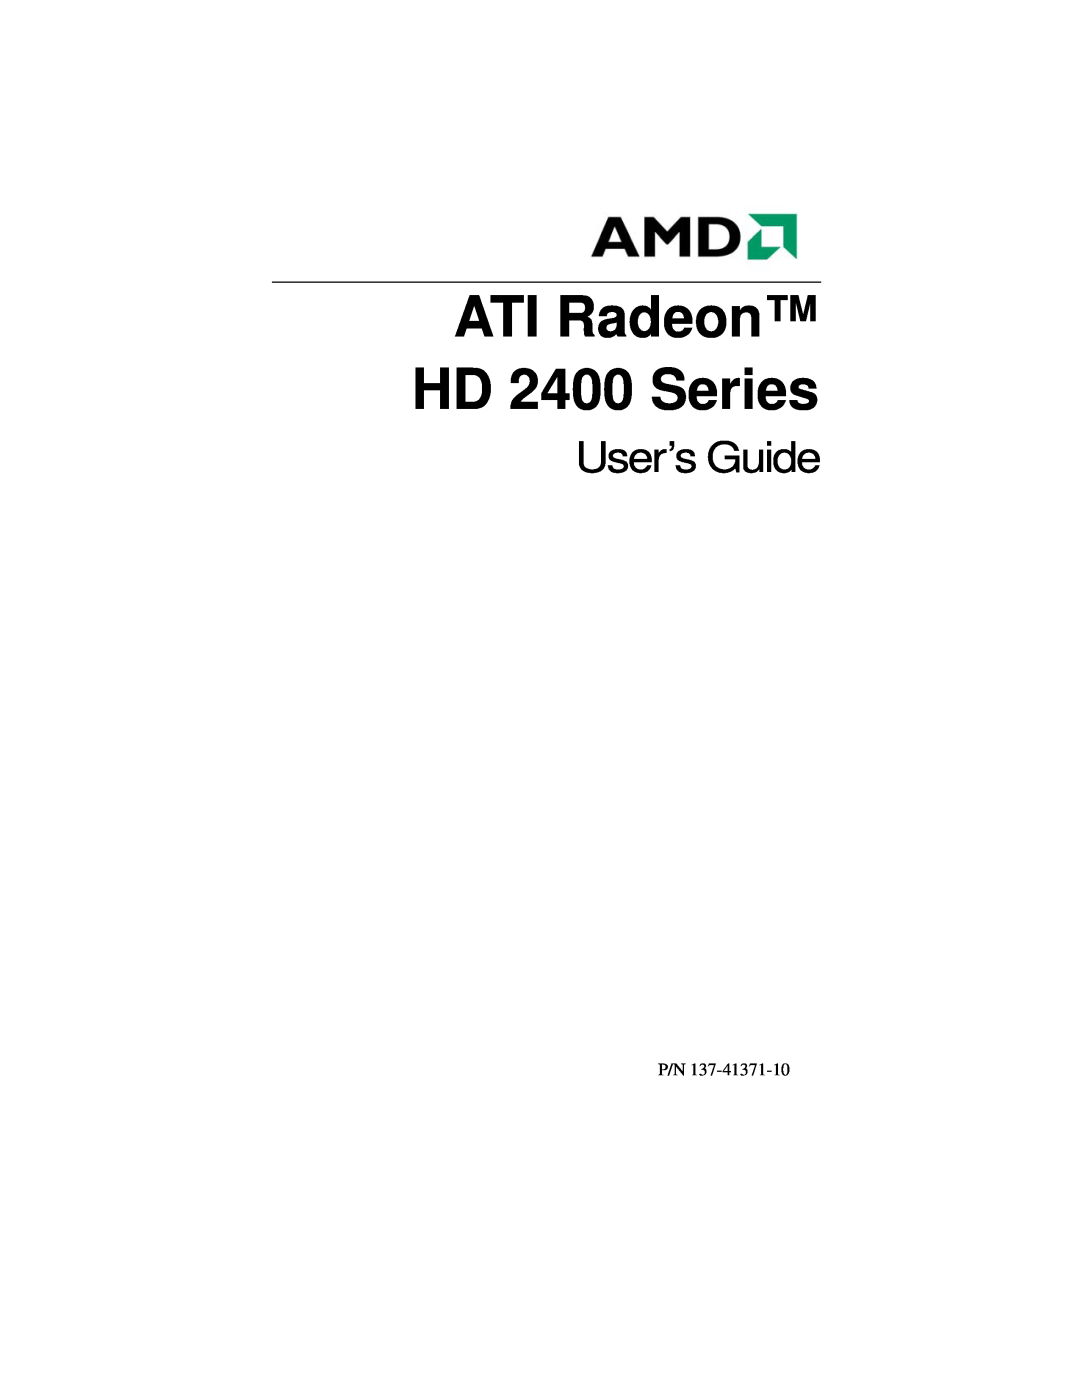 AMD manual ATI Radeon HD 2400 Series, User’s Guide 